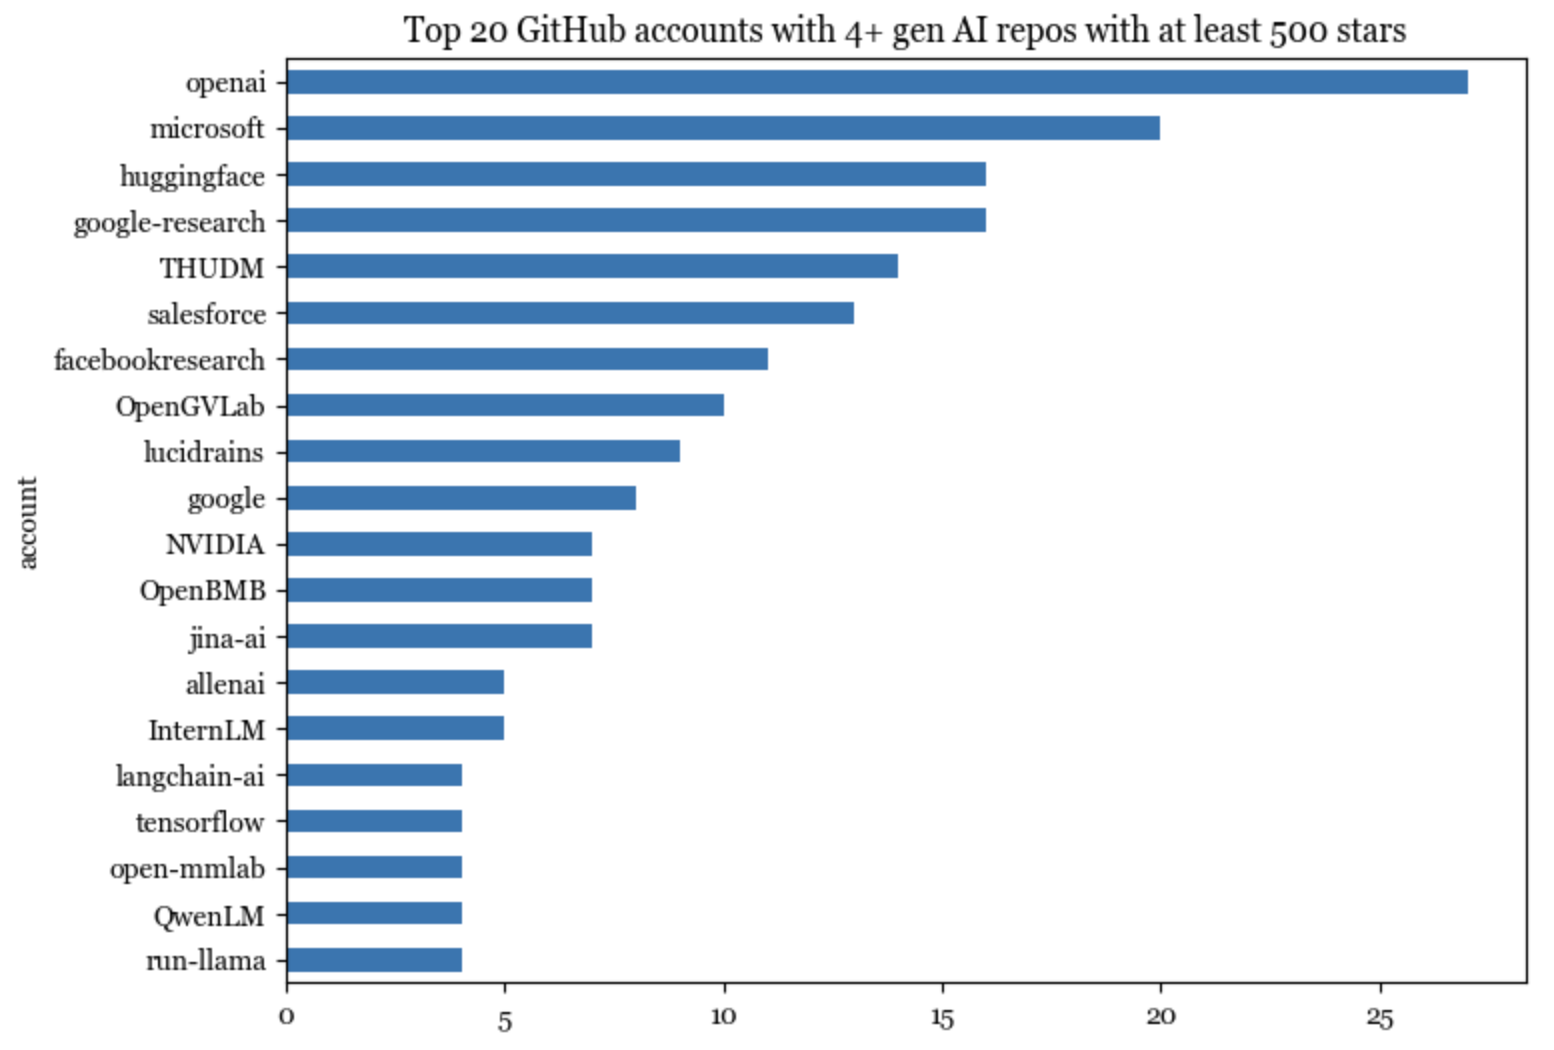 Most active GitHub accounts